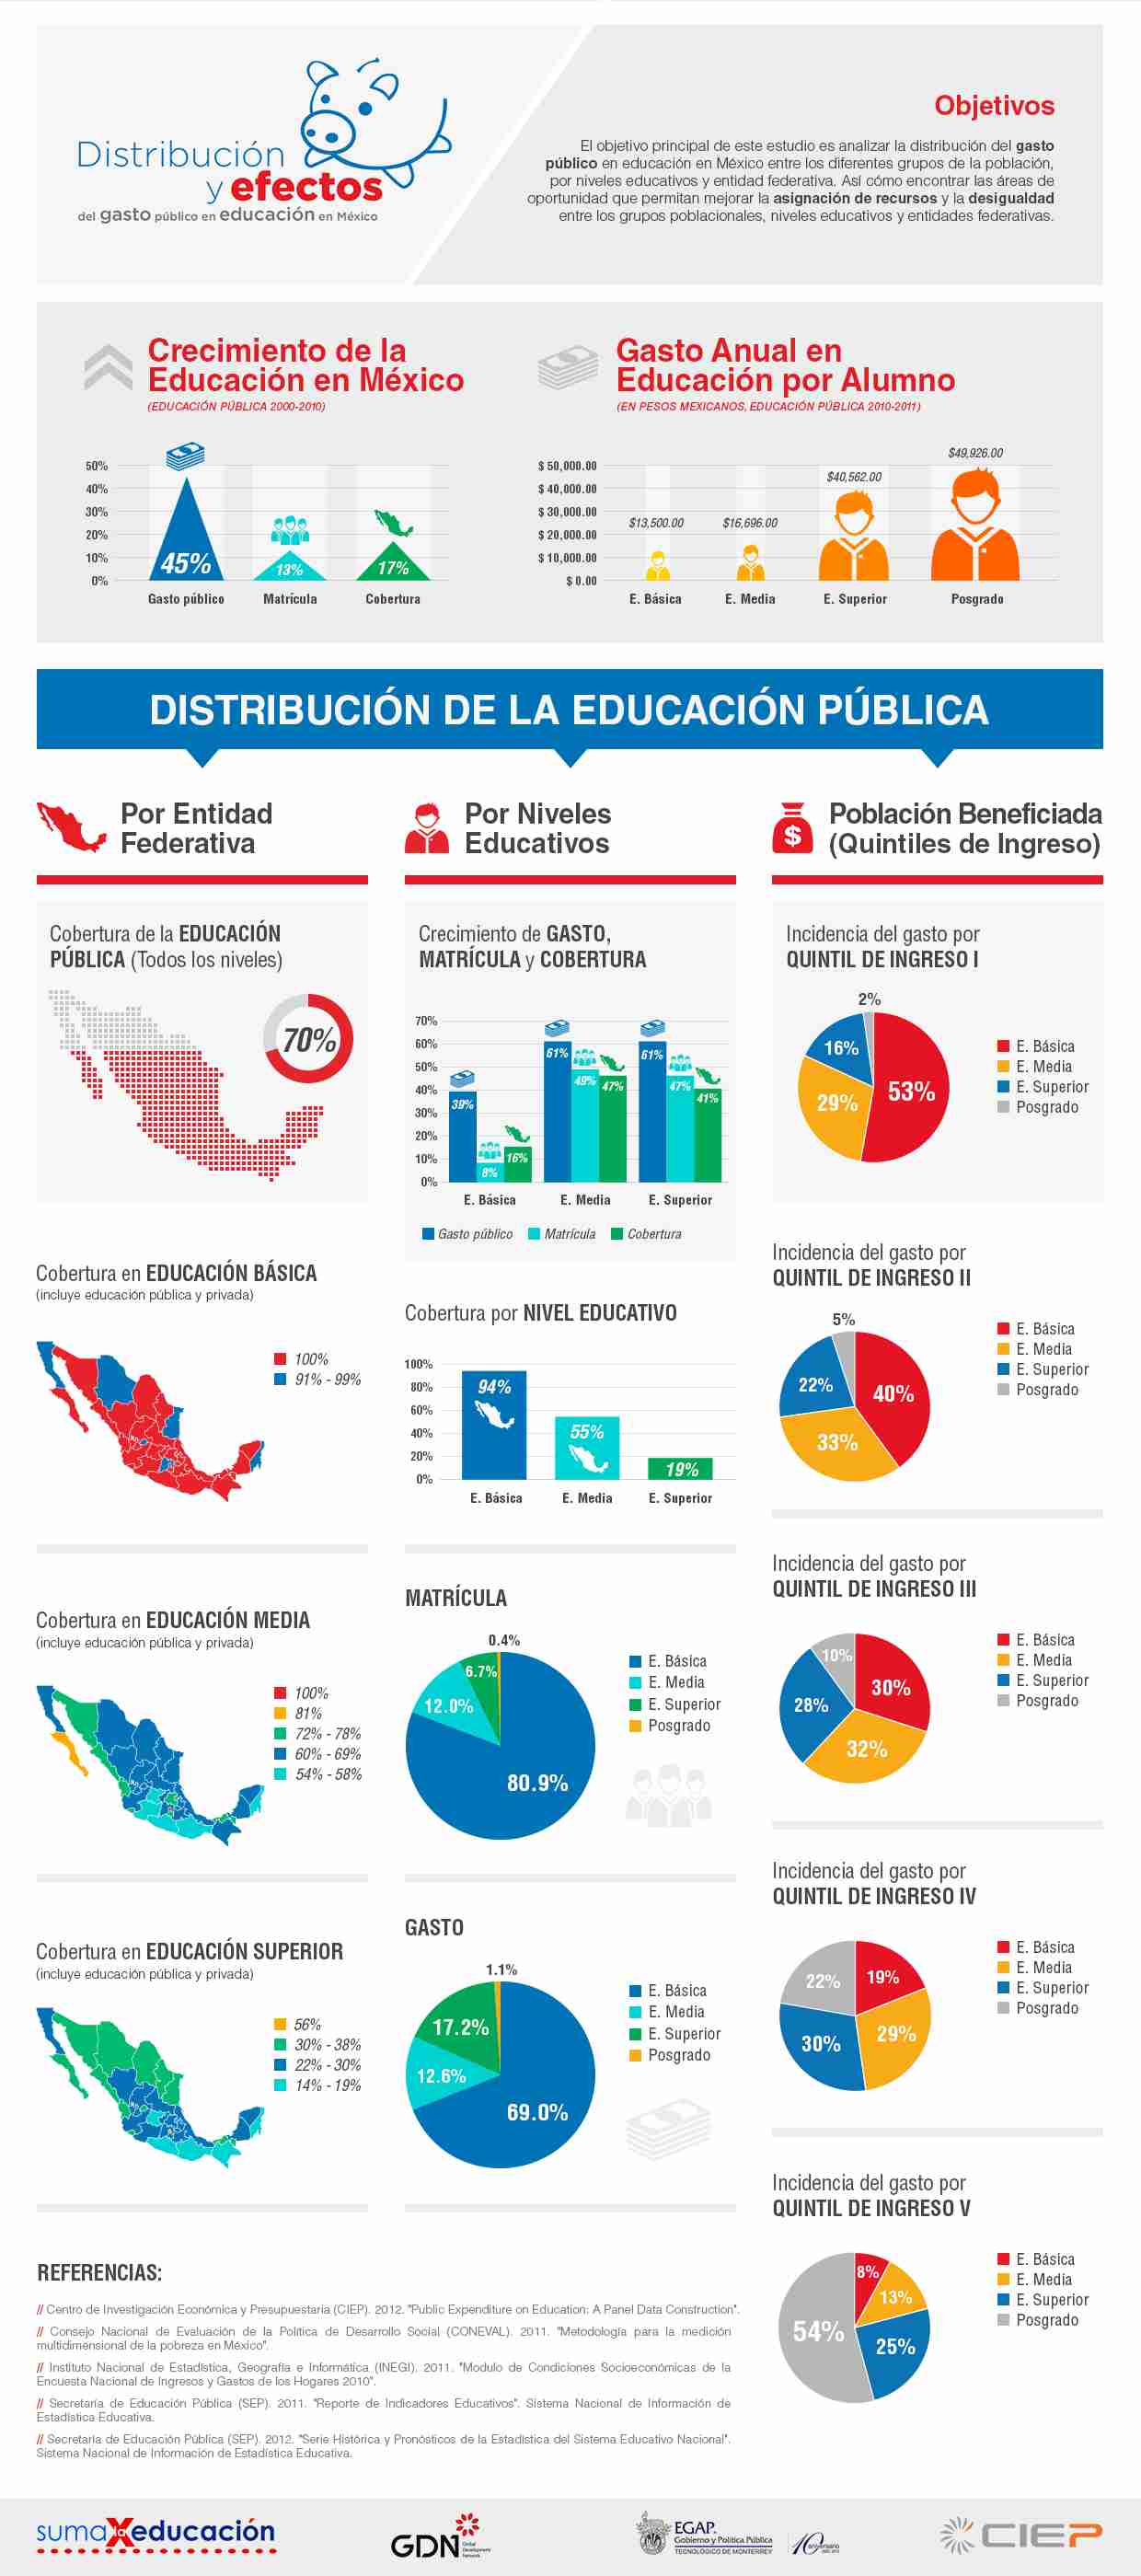 Distribución de la educación pública en México